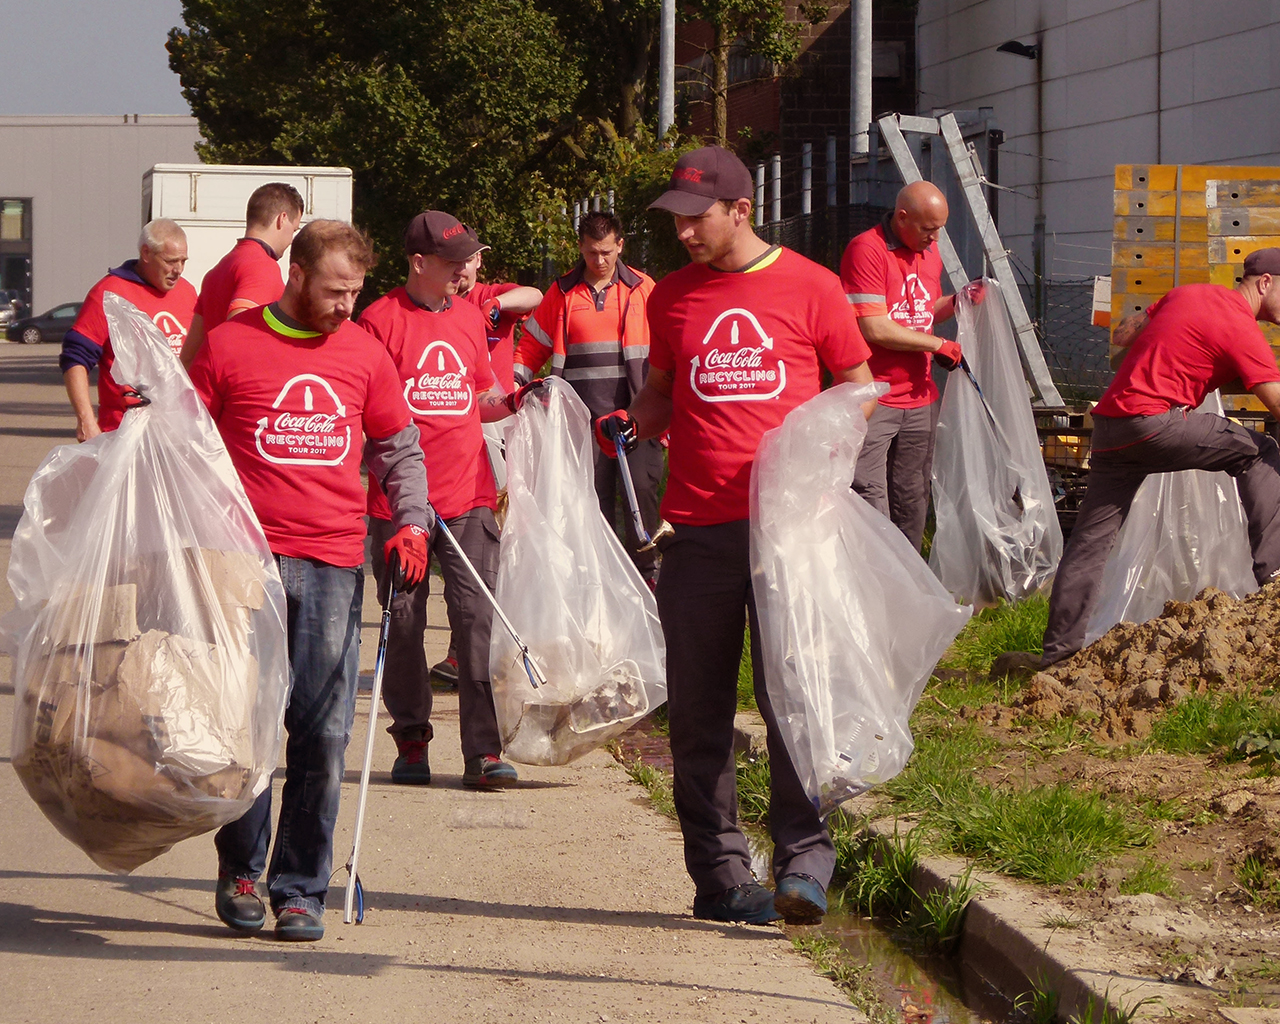 Vrijwilligers dragen een Coca-Cola T-shirt en verzamelen afval om een duurzame wereld te creëren